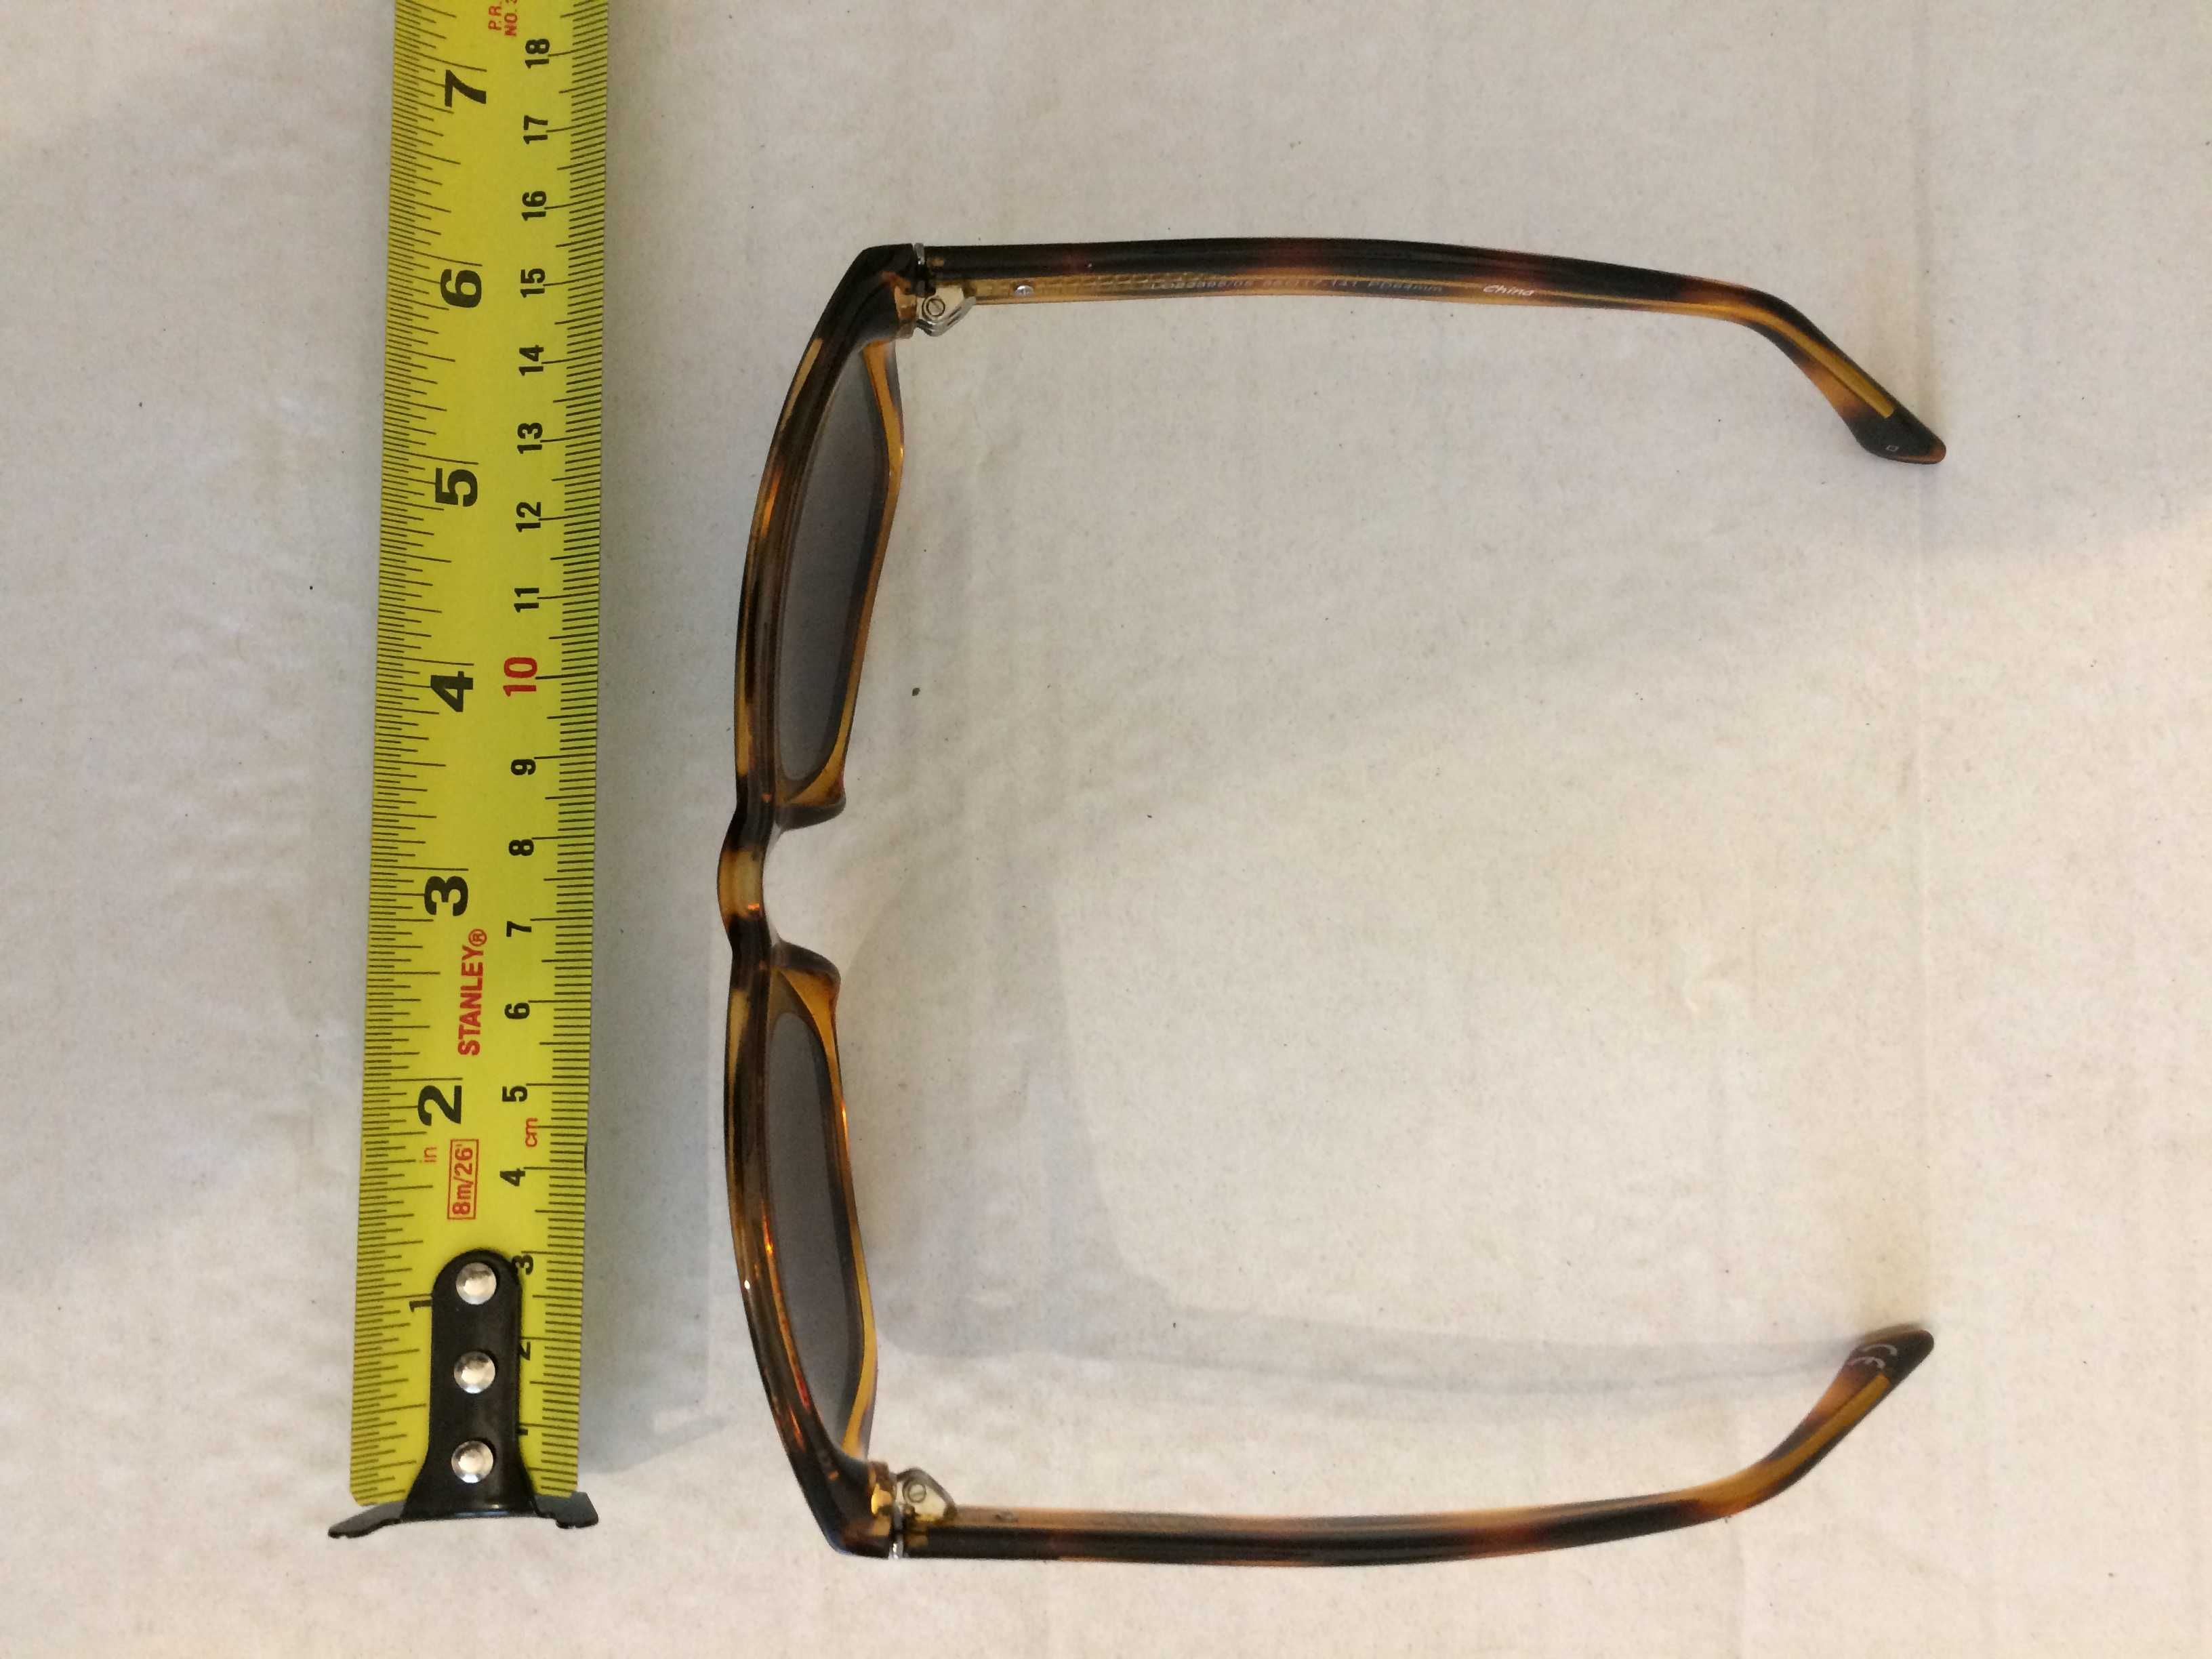 Nowe okulary LEVIS przeciwsłoneczne